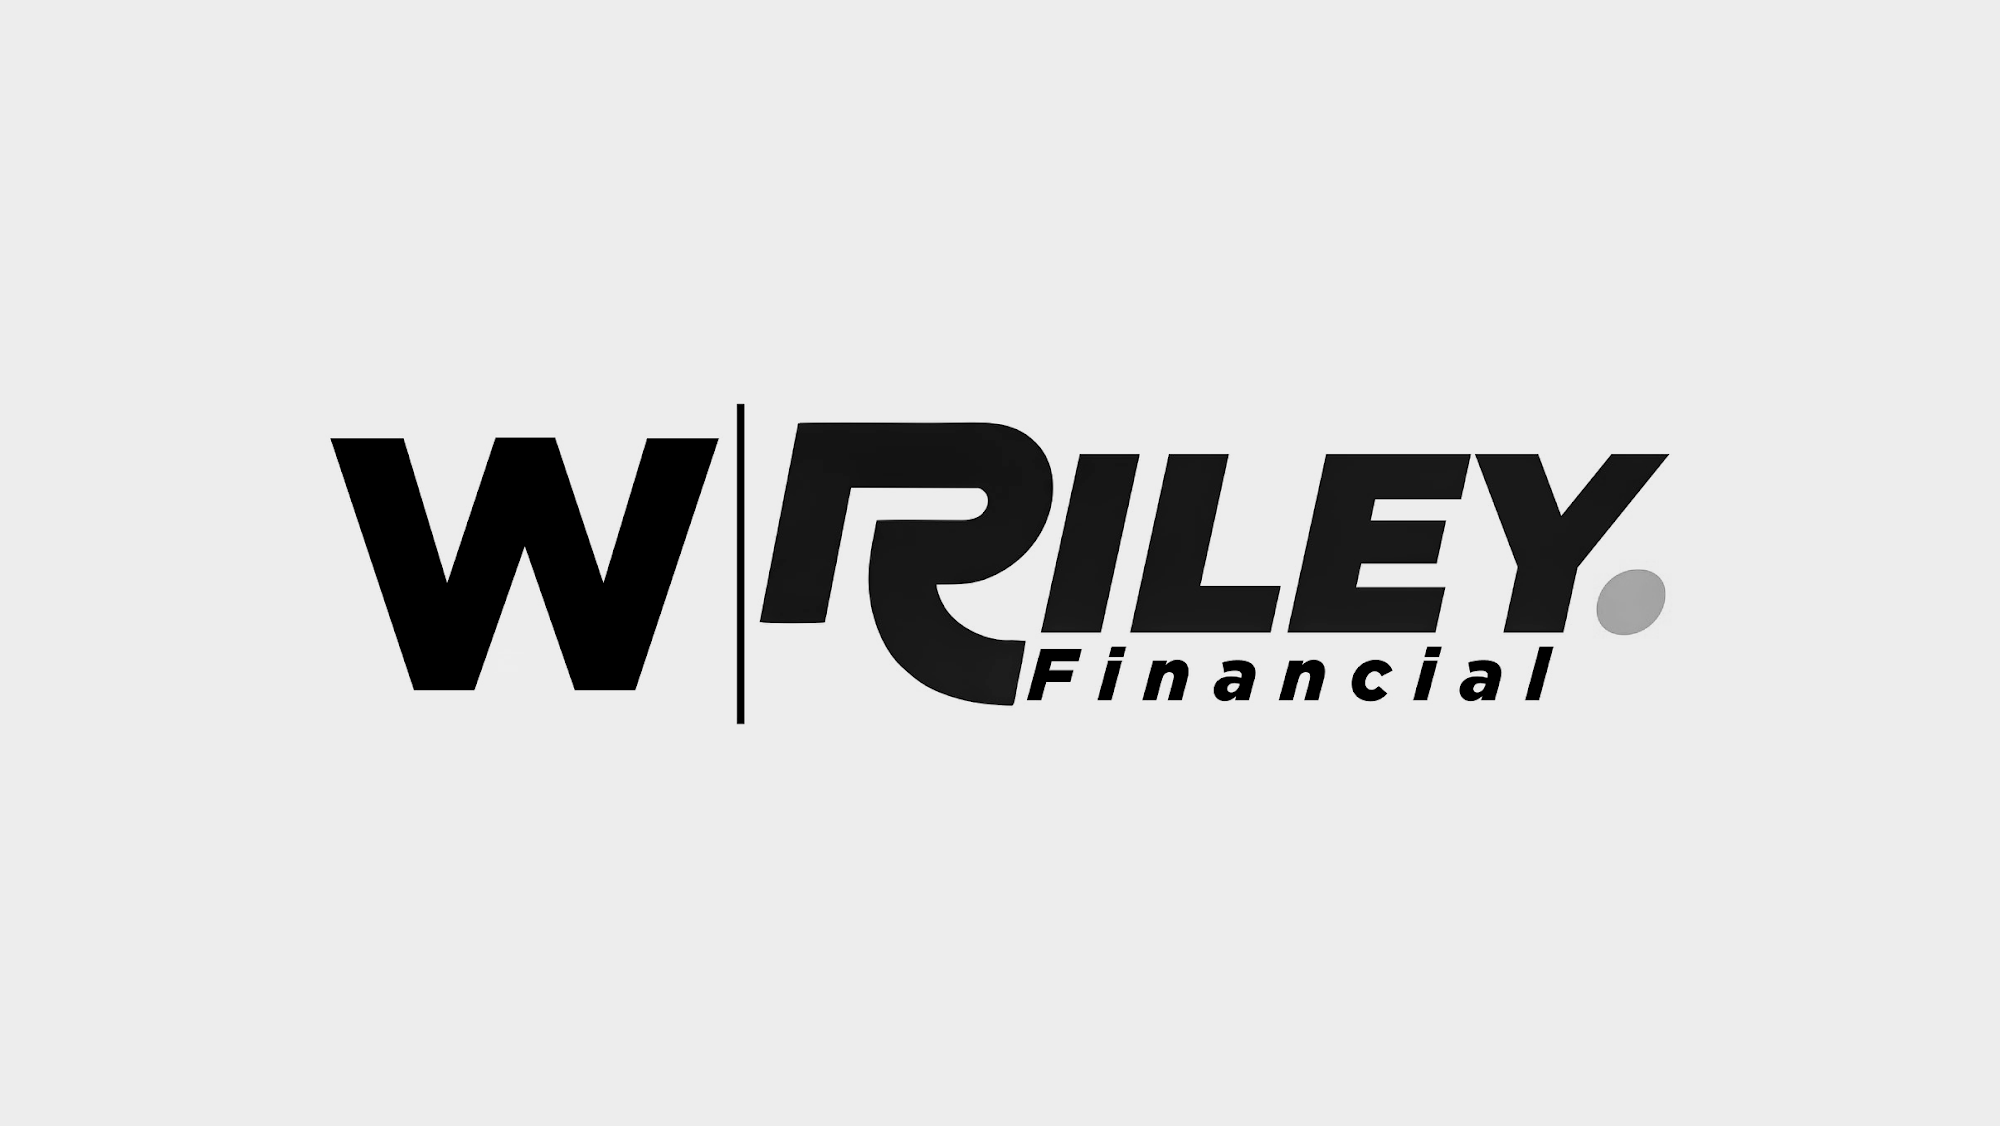 W. Riley Financial, LLC 7021 NW 140th St, Chiefland Florida 32626